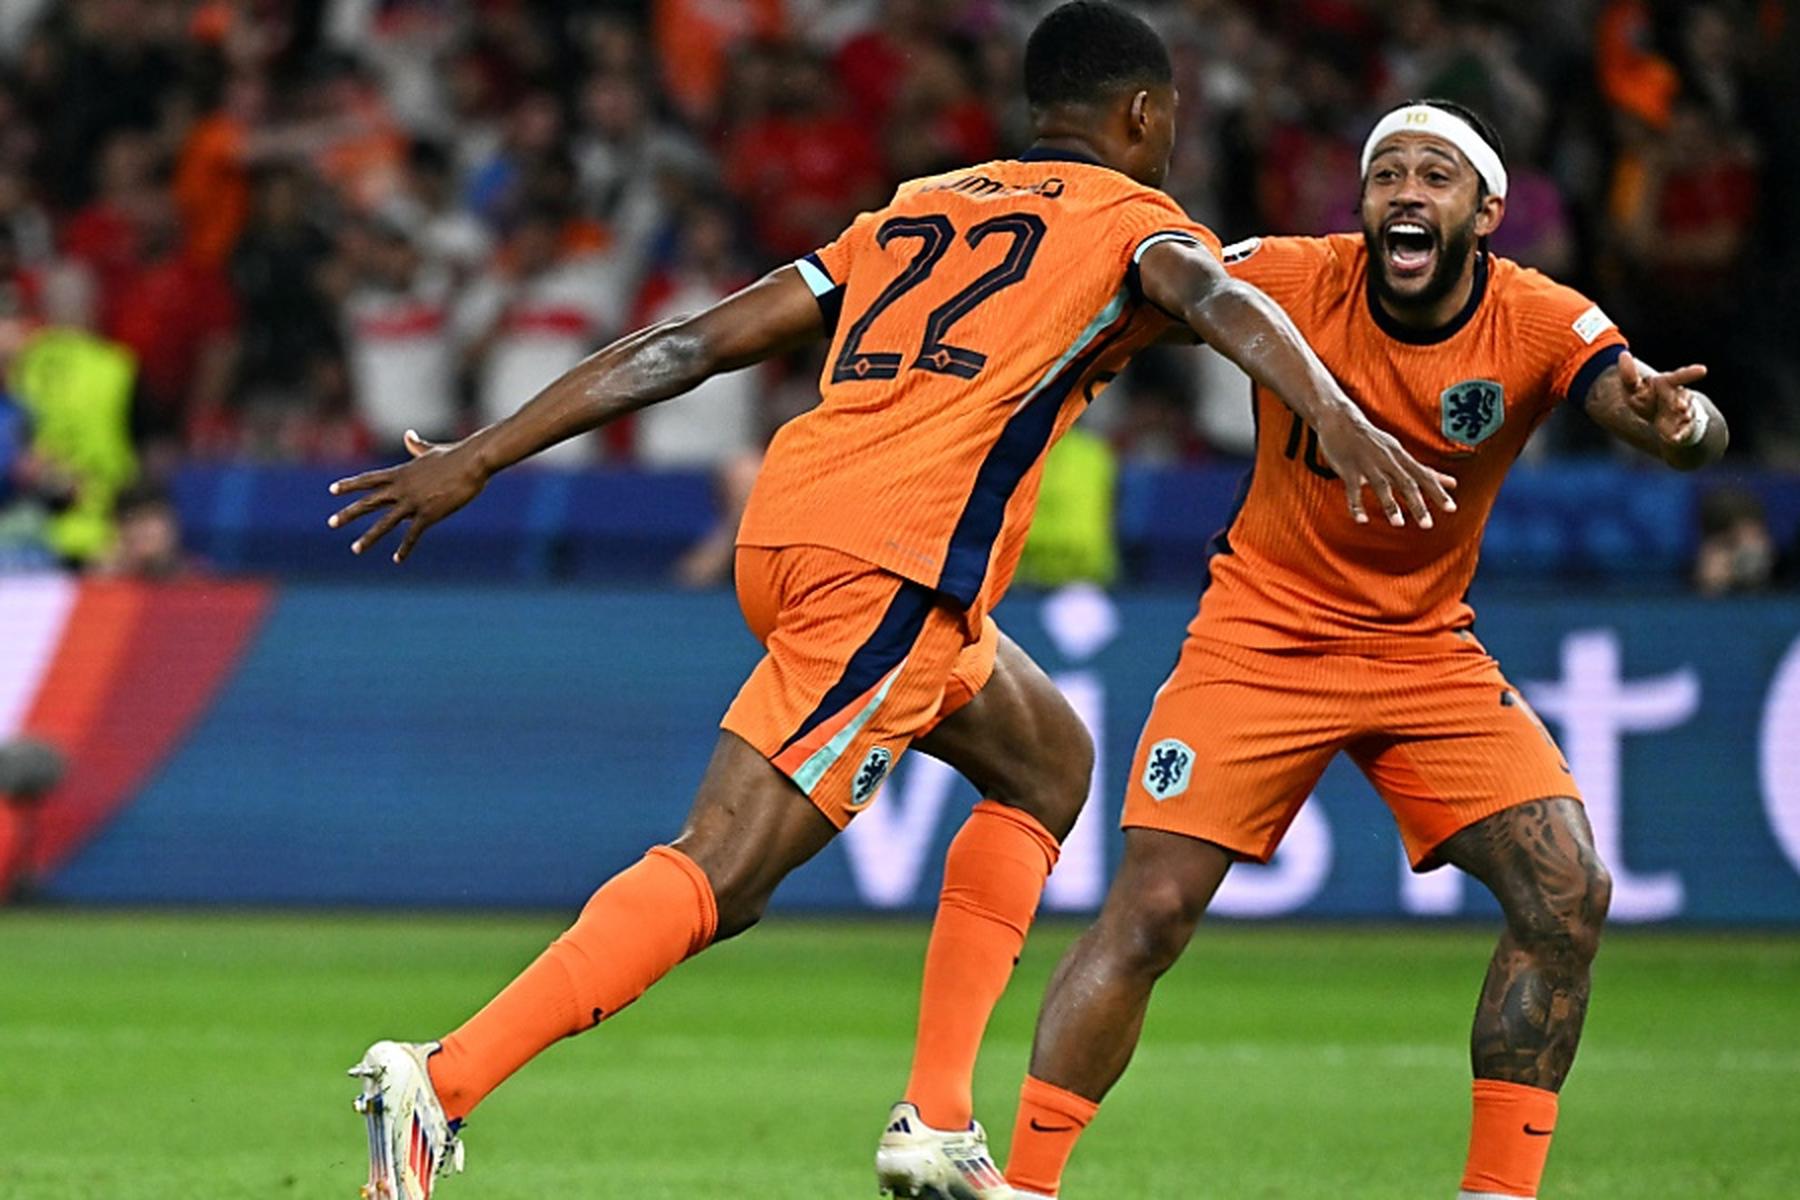 Berlin: Niederlande mit Comeback-Sieg gegen Türkei ins Halbfinale